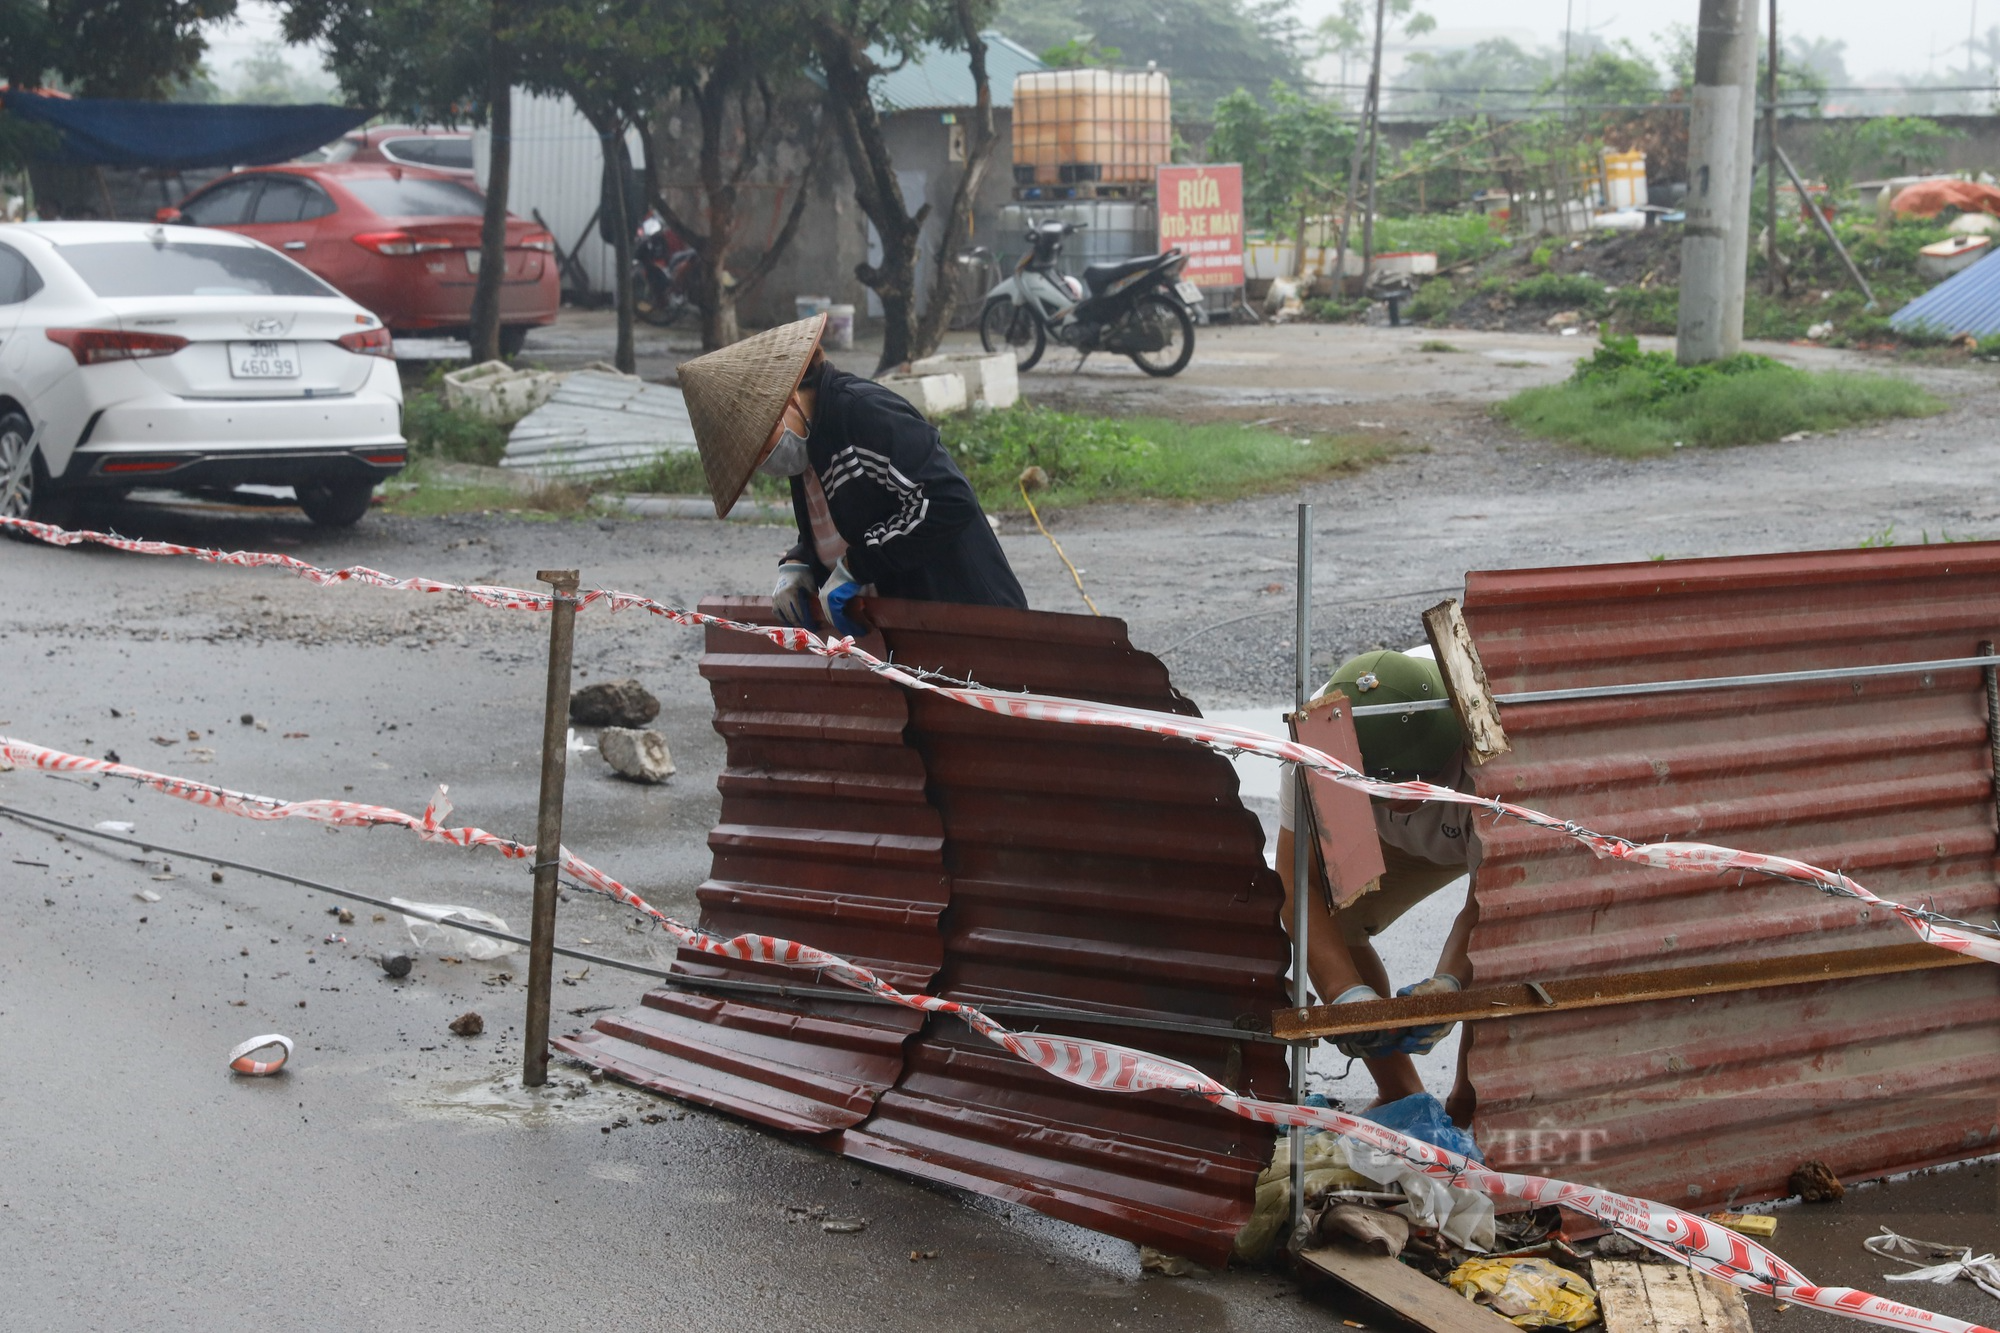 Đóng cột kiên cố, dựng hàng rào dây thép gai giữa đường tại chung cư nghìn dân sinh sống ở Hà Nội - Ảnh 6.